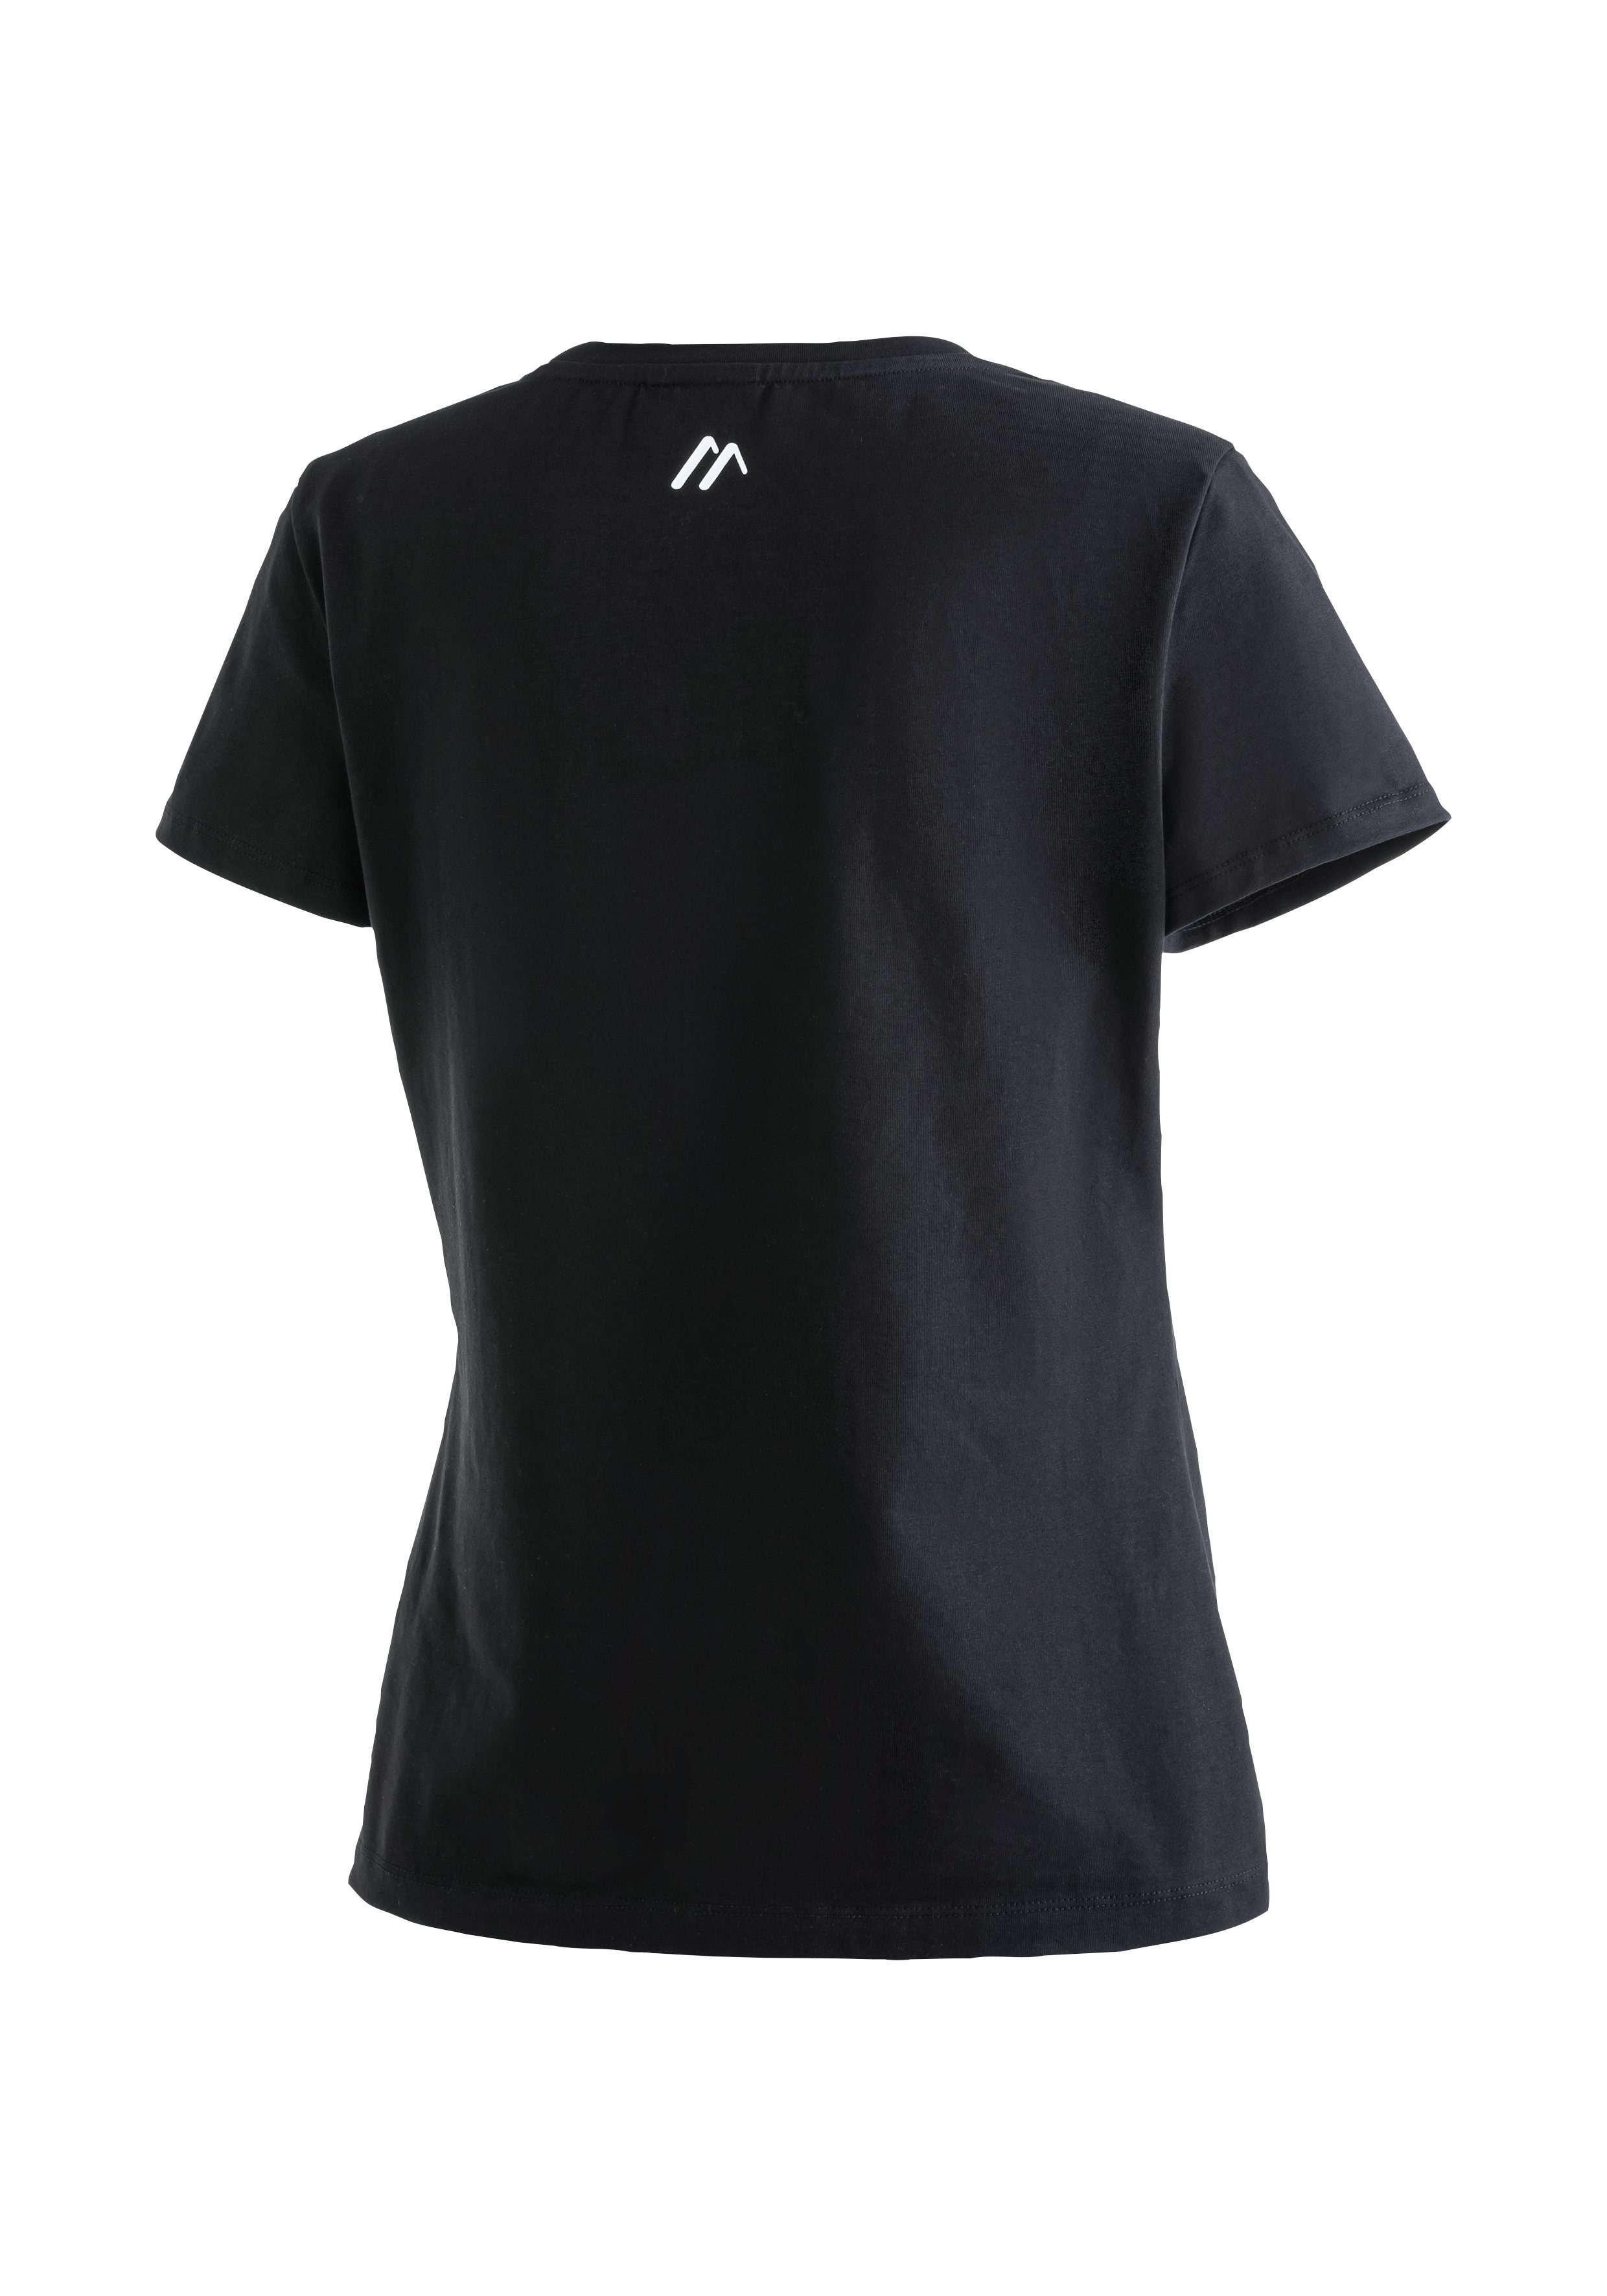 Tee Sports aus Rundhalsshirt W Maier Material Funktionsshirt elastischem MS schwarz Vielseitiges